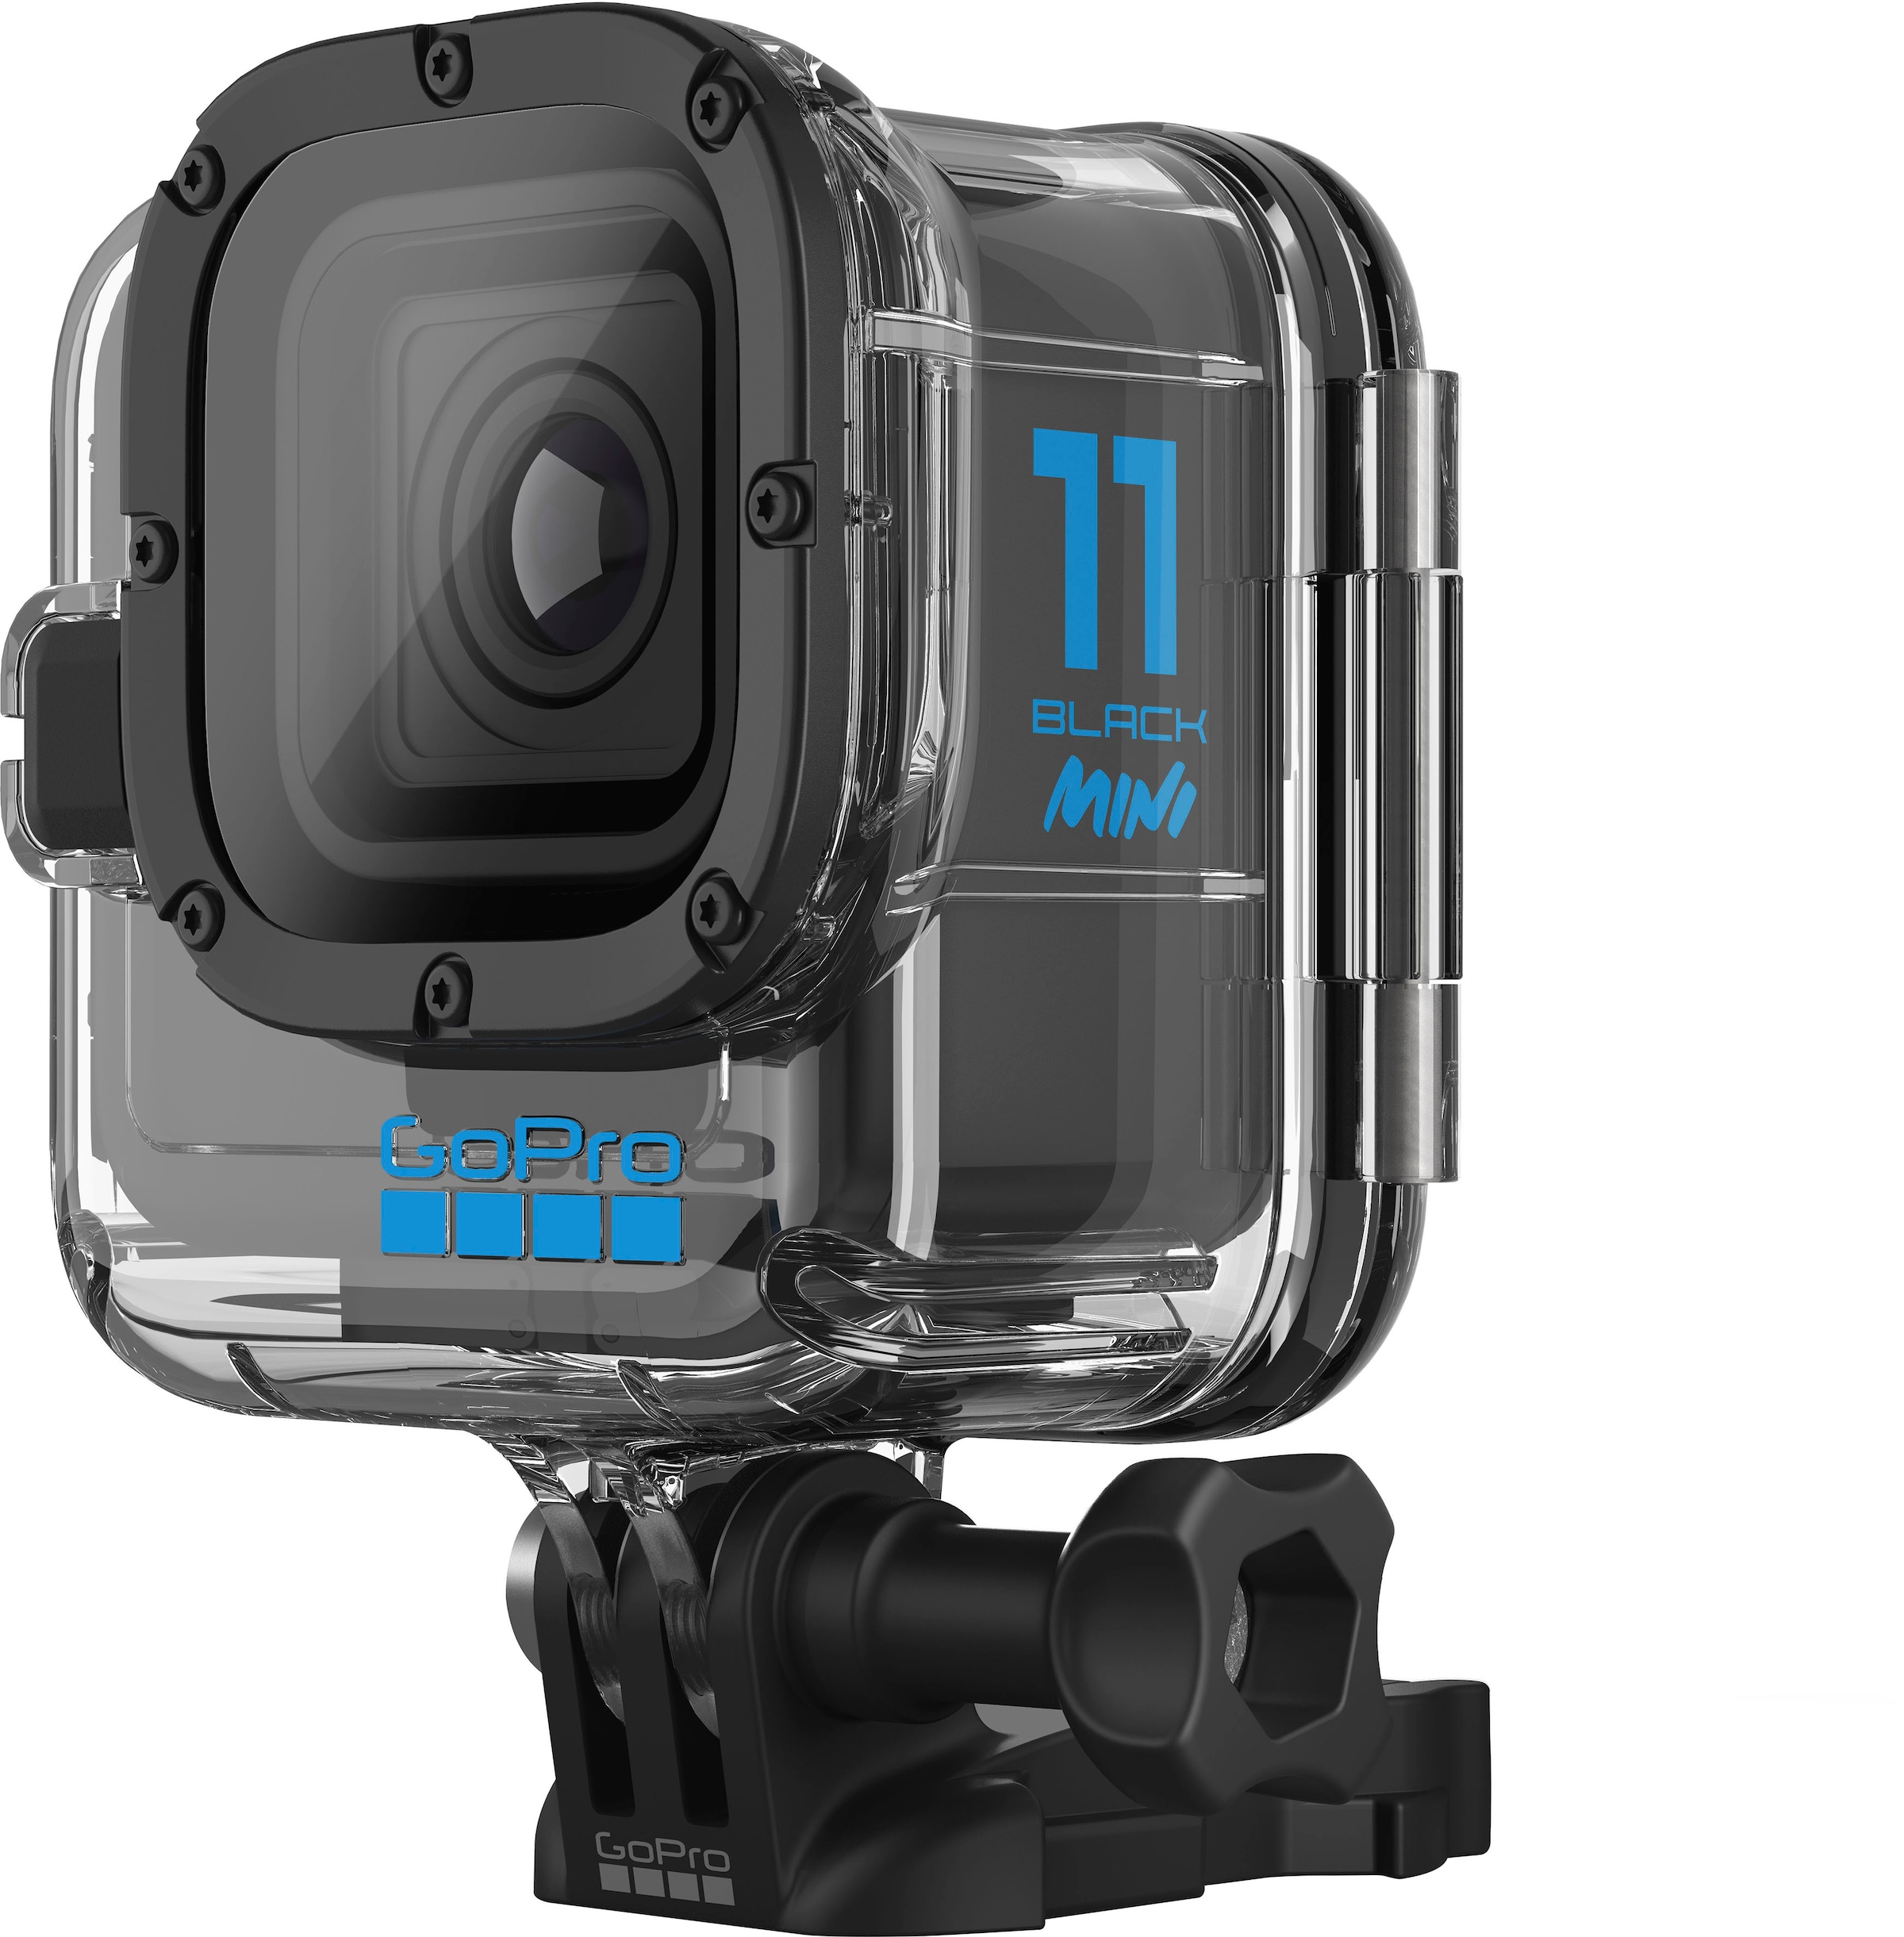 online BLACK kaufen HERO11 GoPro »TAUCHGEHÄUSE Zubehör Actioncam MINI«